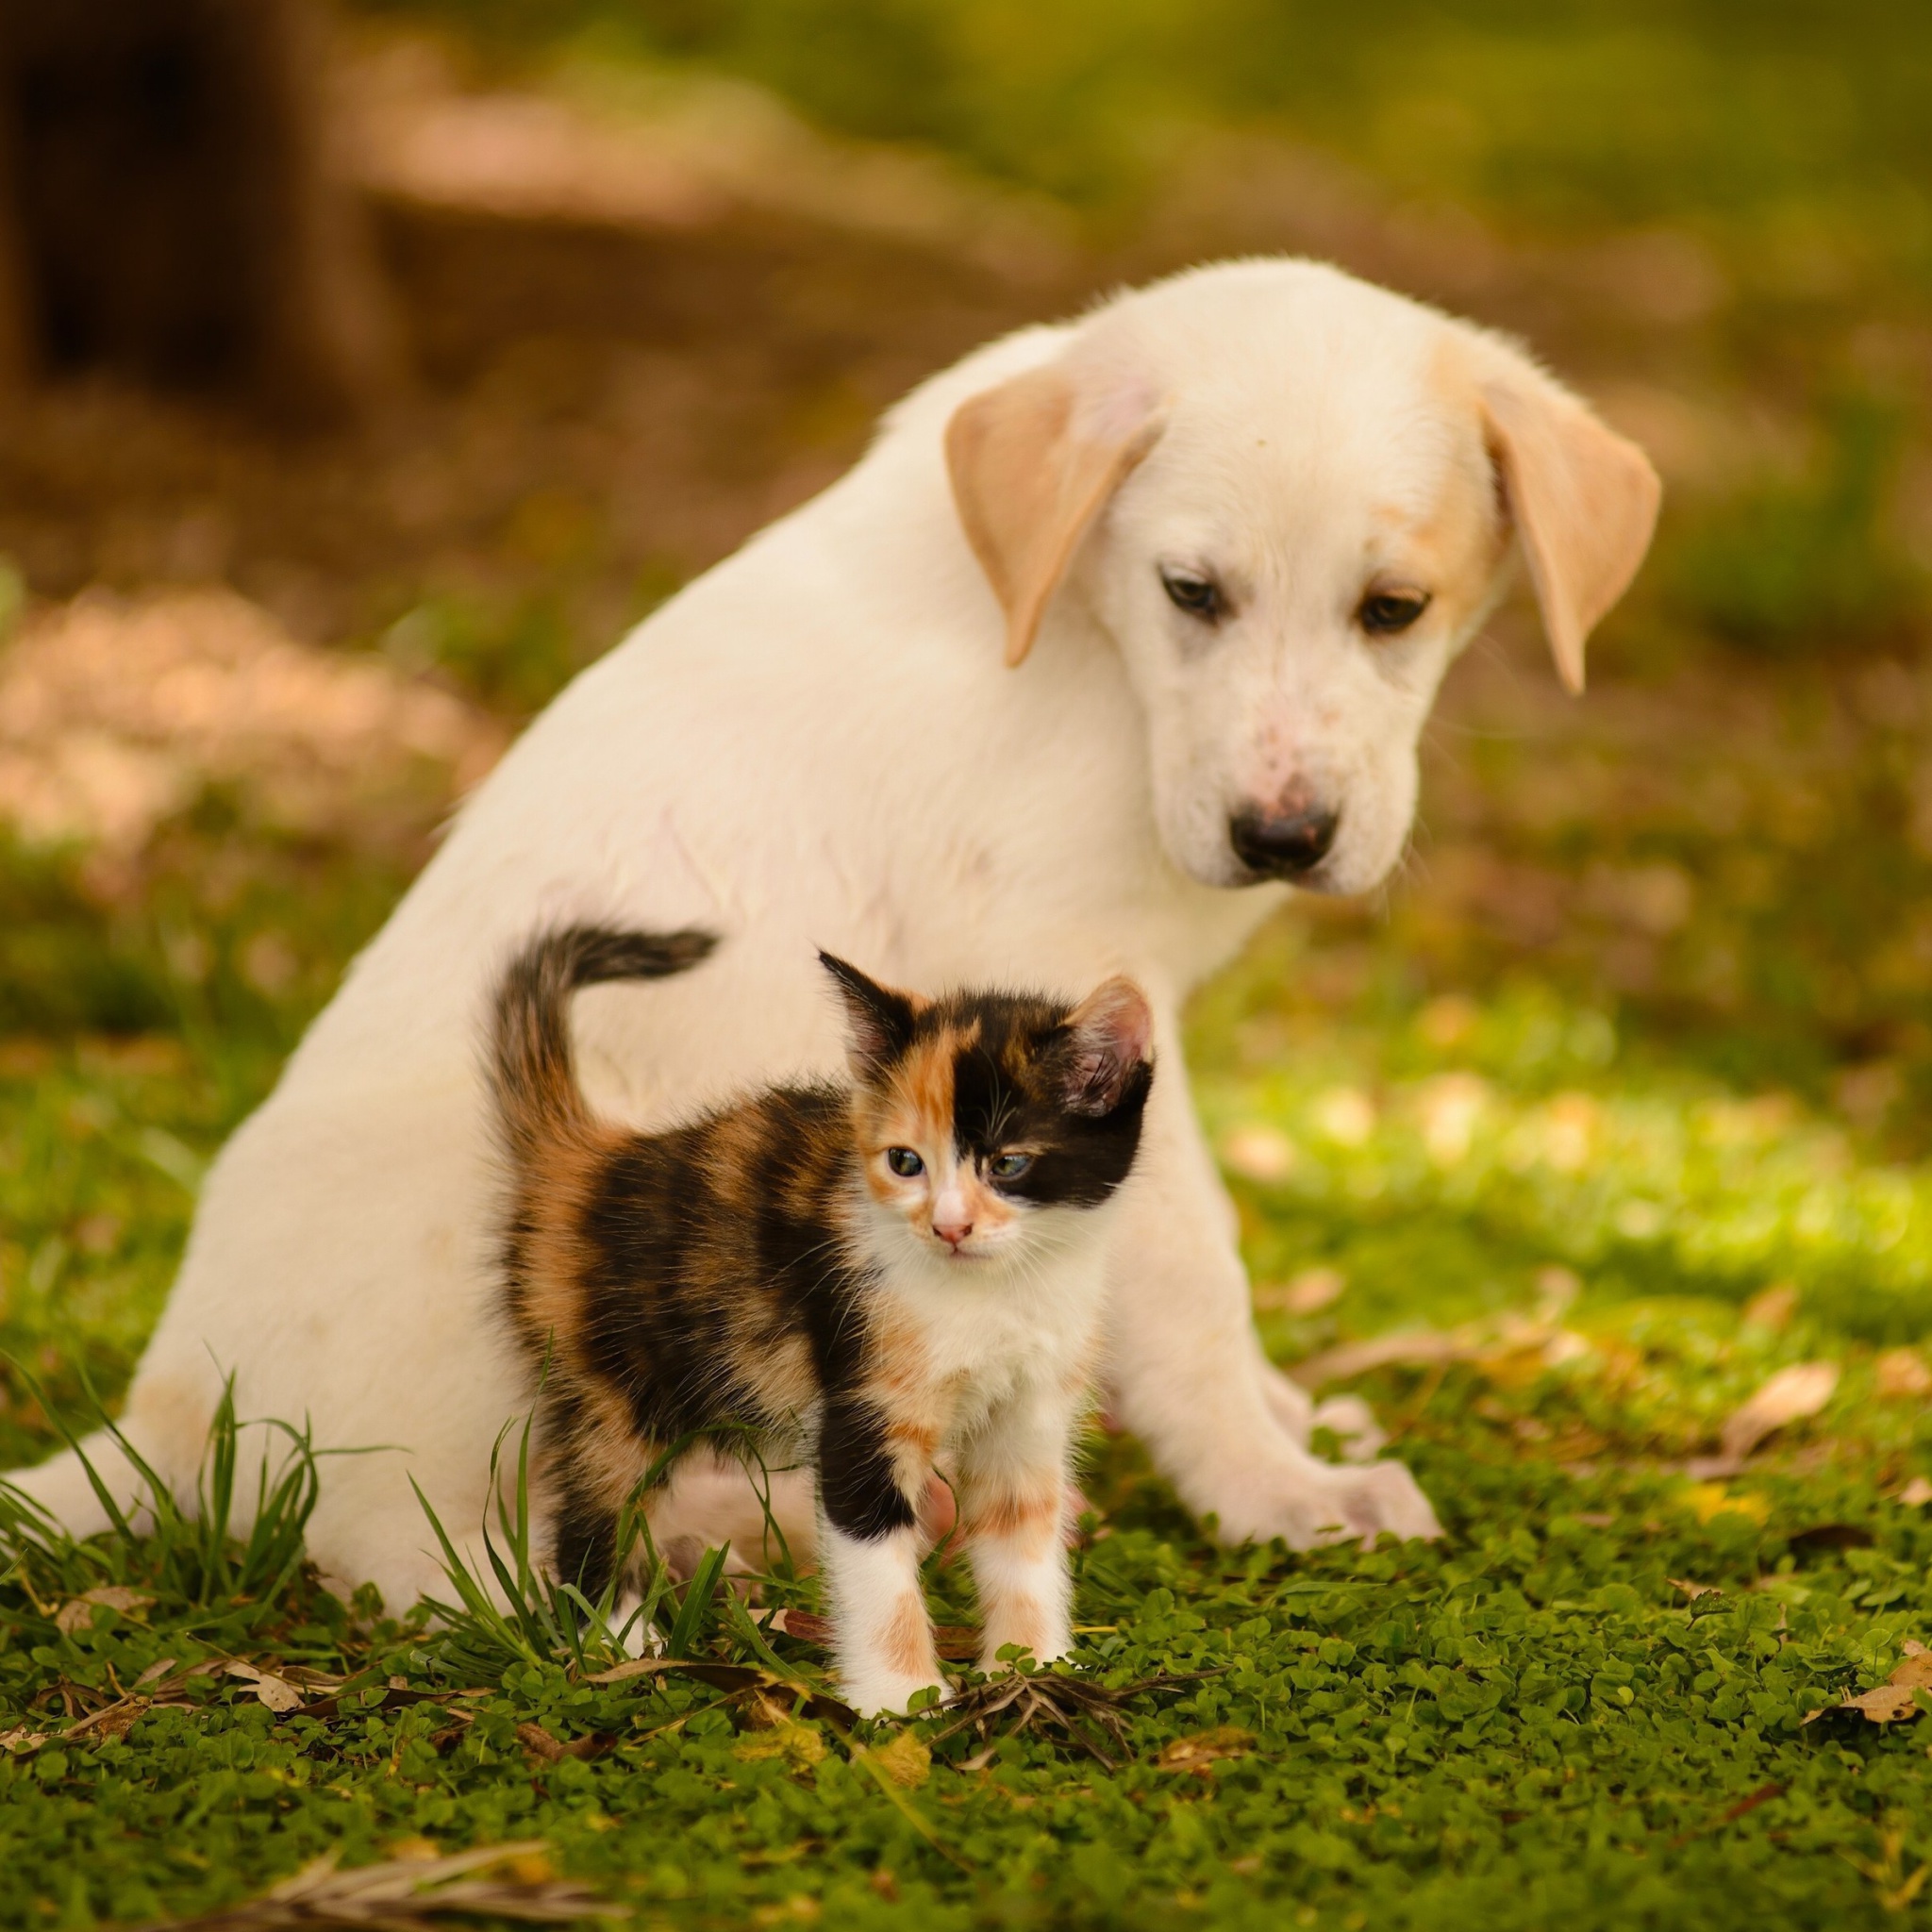 Puppy and Kitten wallpaper 2048x2048